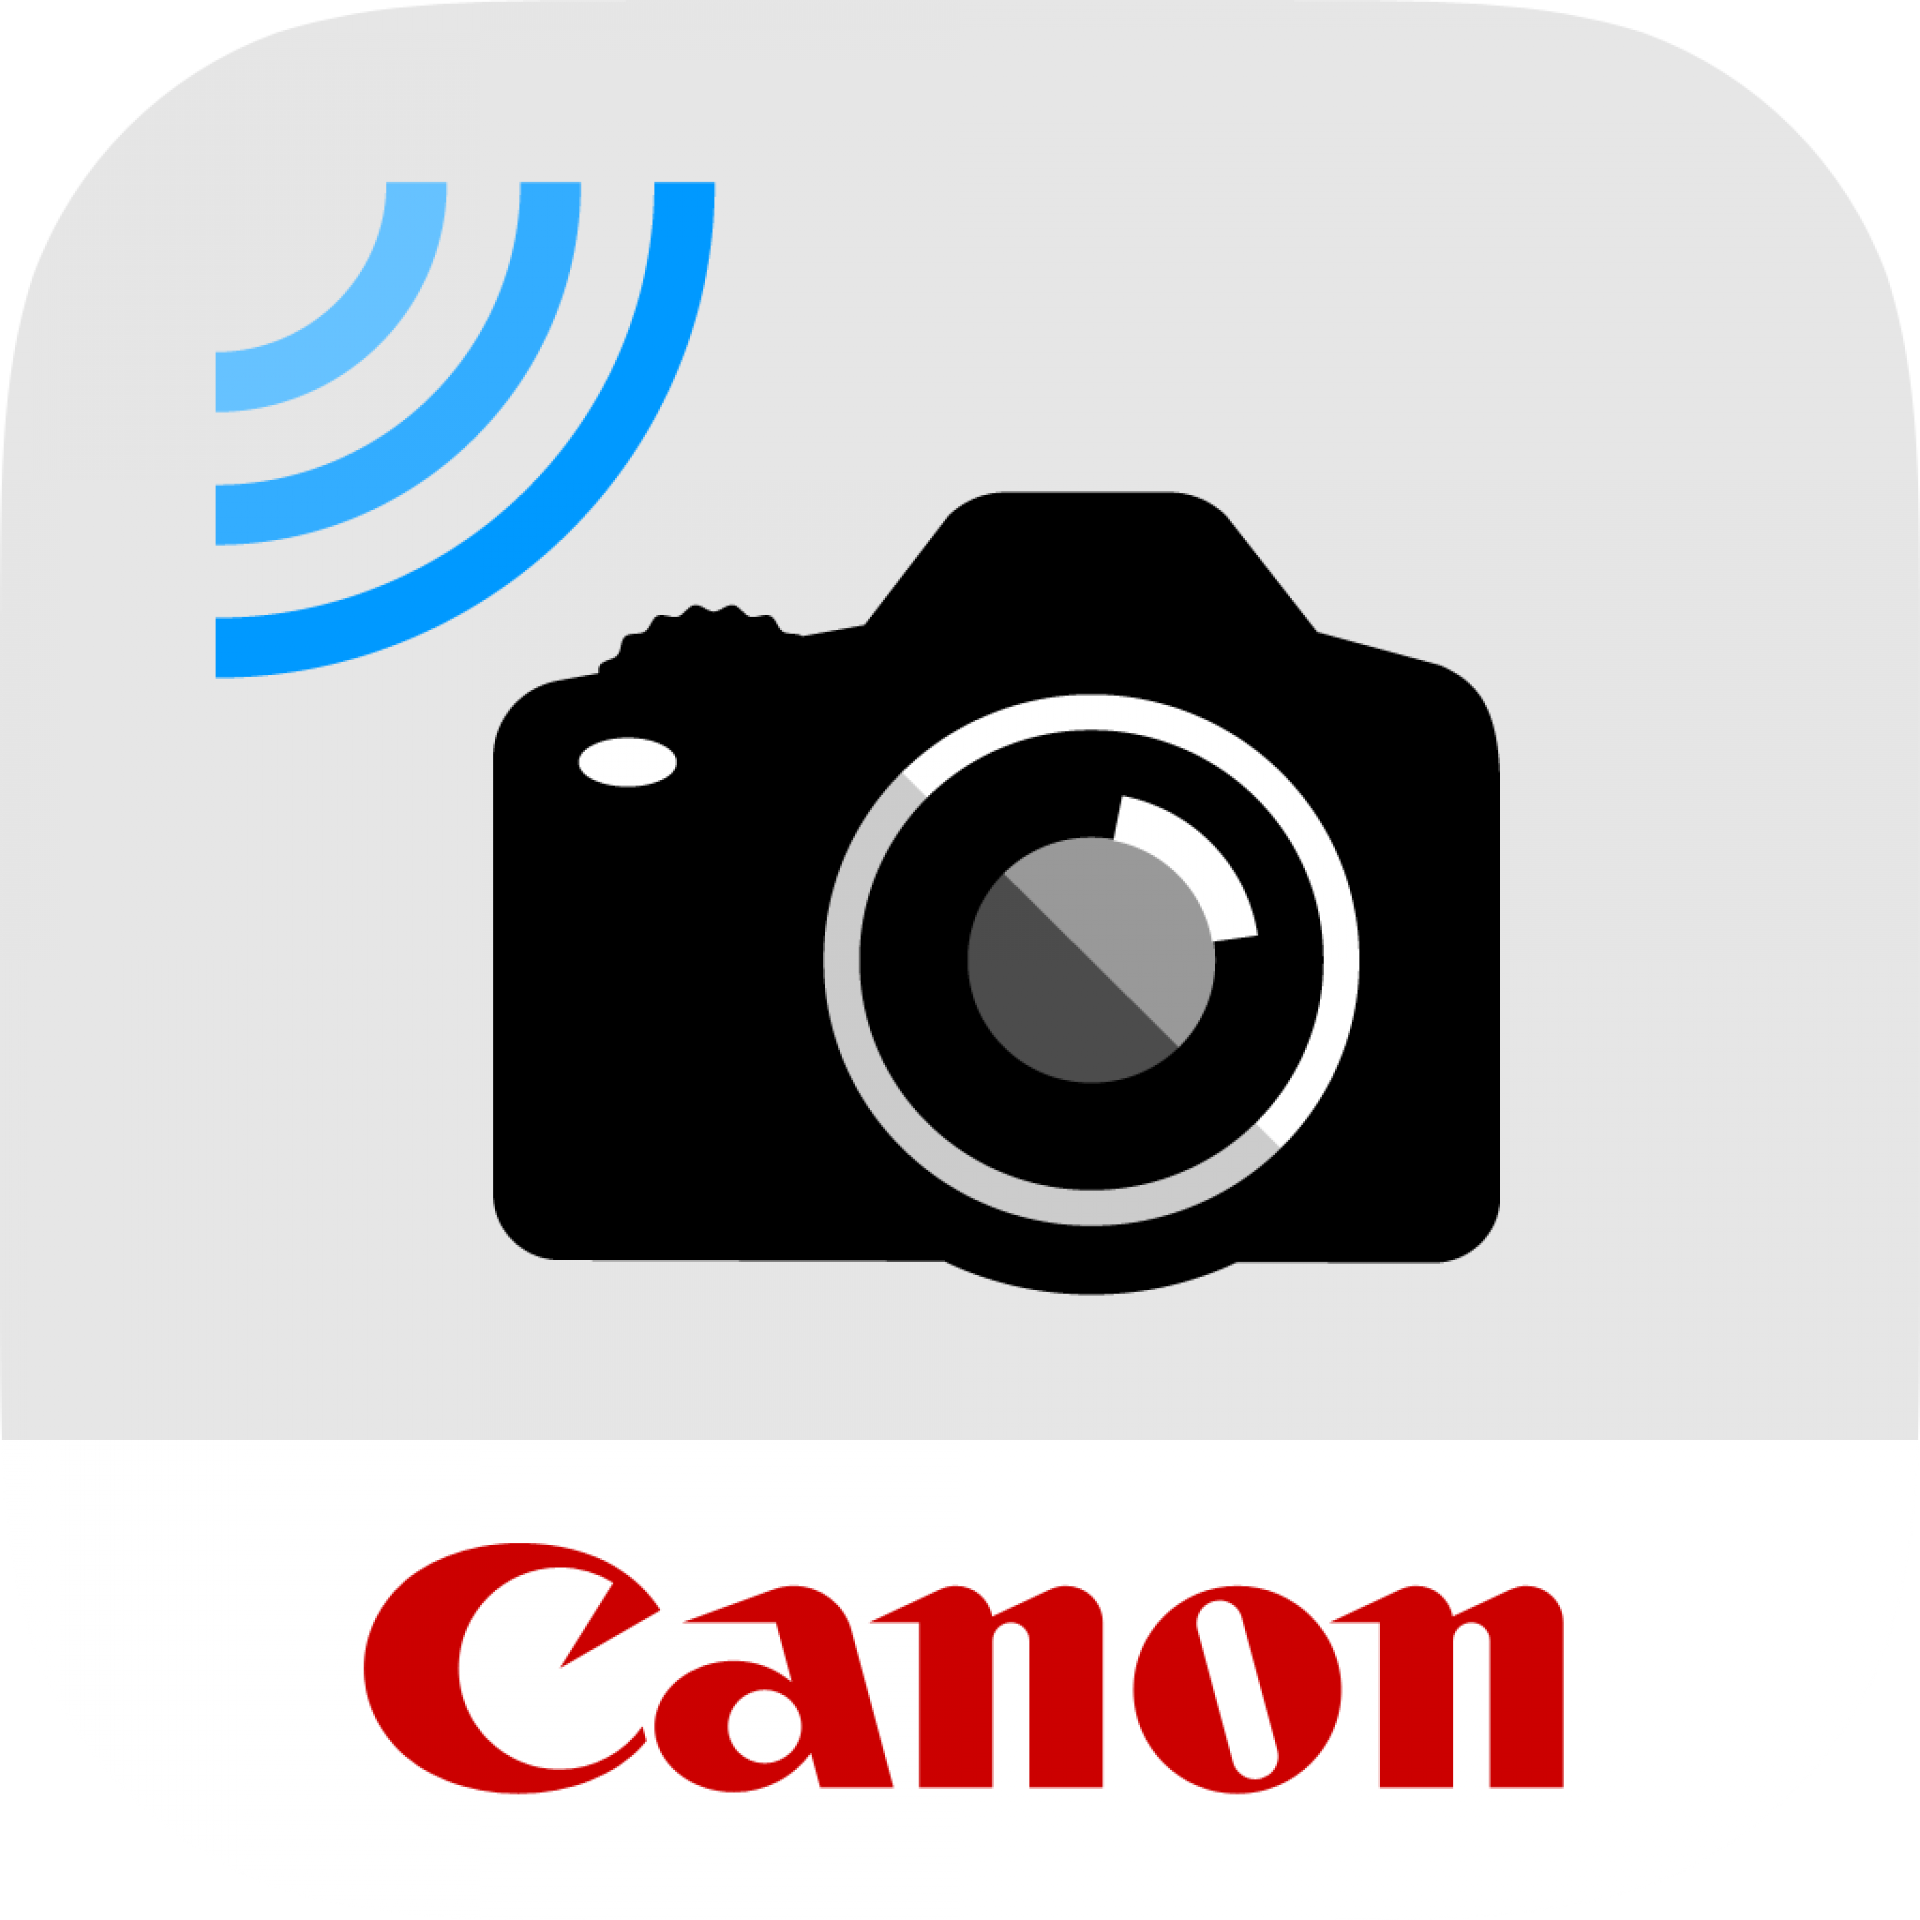 Fernsehstation zuordnen Trauer canon kamera mit smartphone verbinden ...